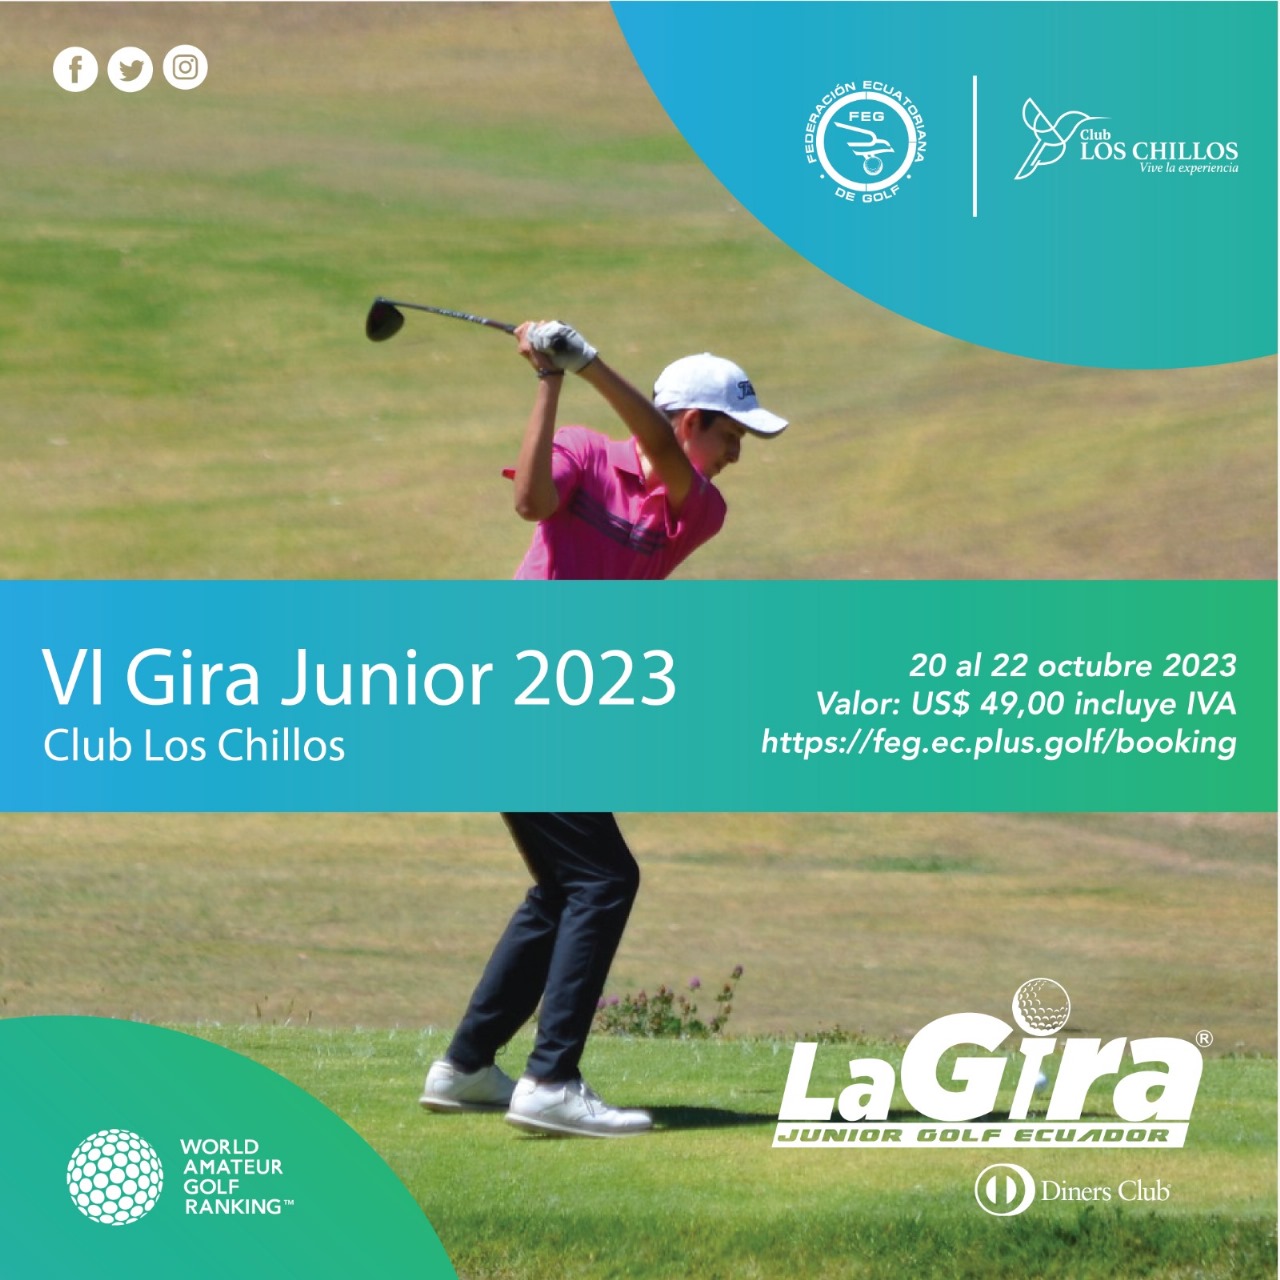 Gira Junior del Club Los Chillos 2023